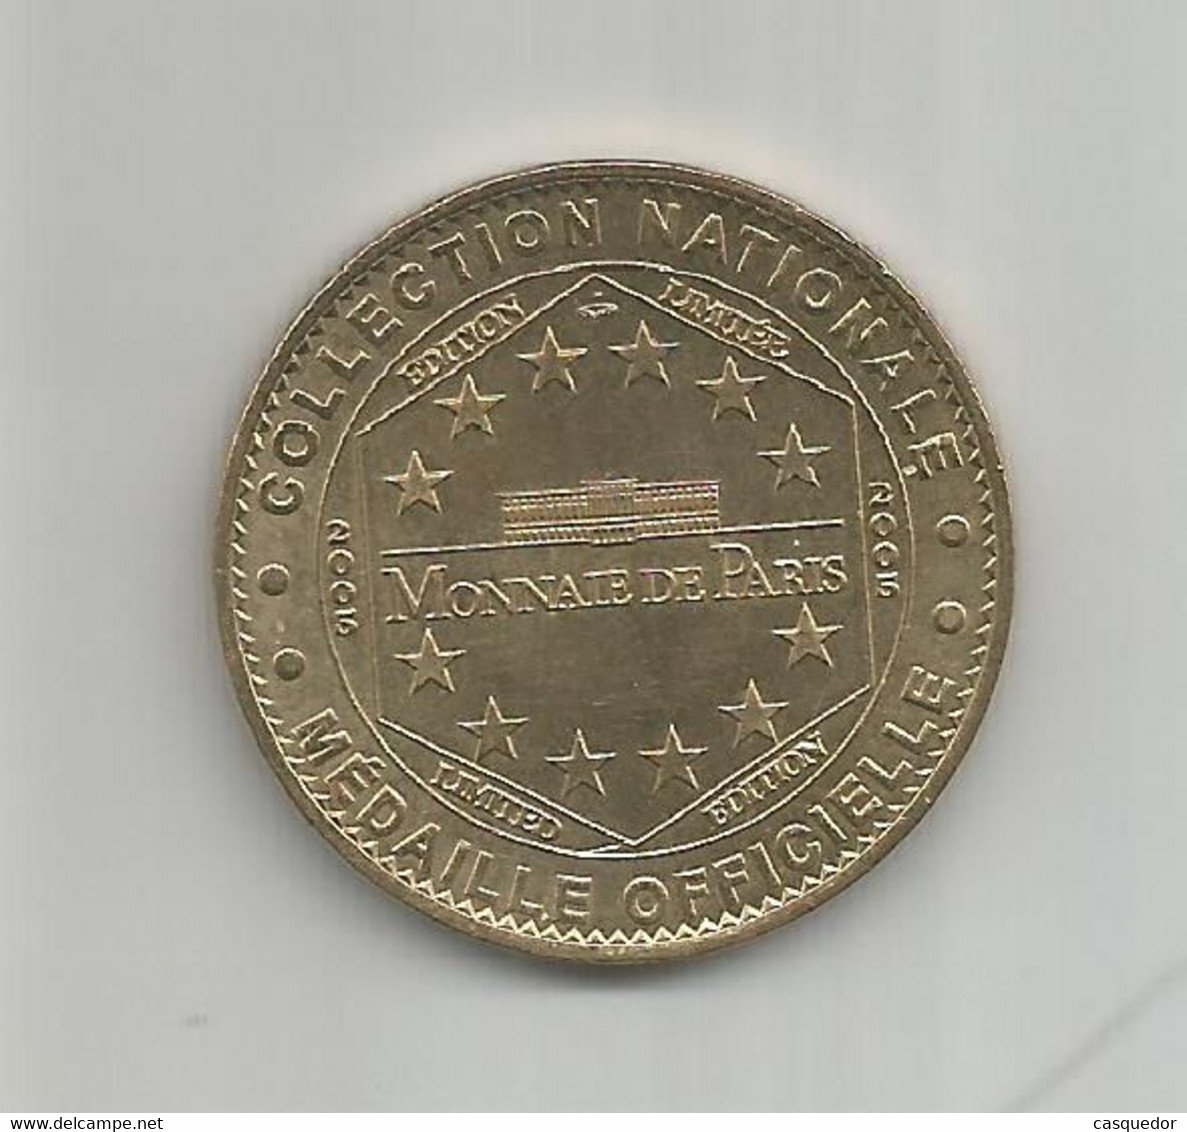 Médaille Touristique Château De Chenonceau - Edition Limitée 2005 - 2005